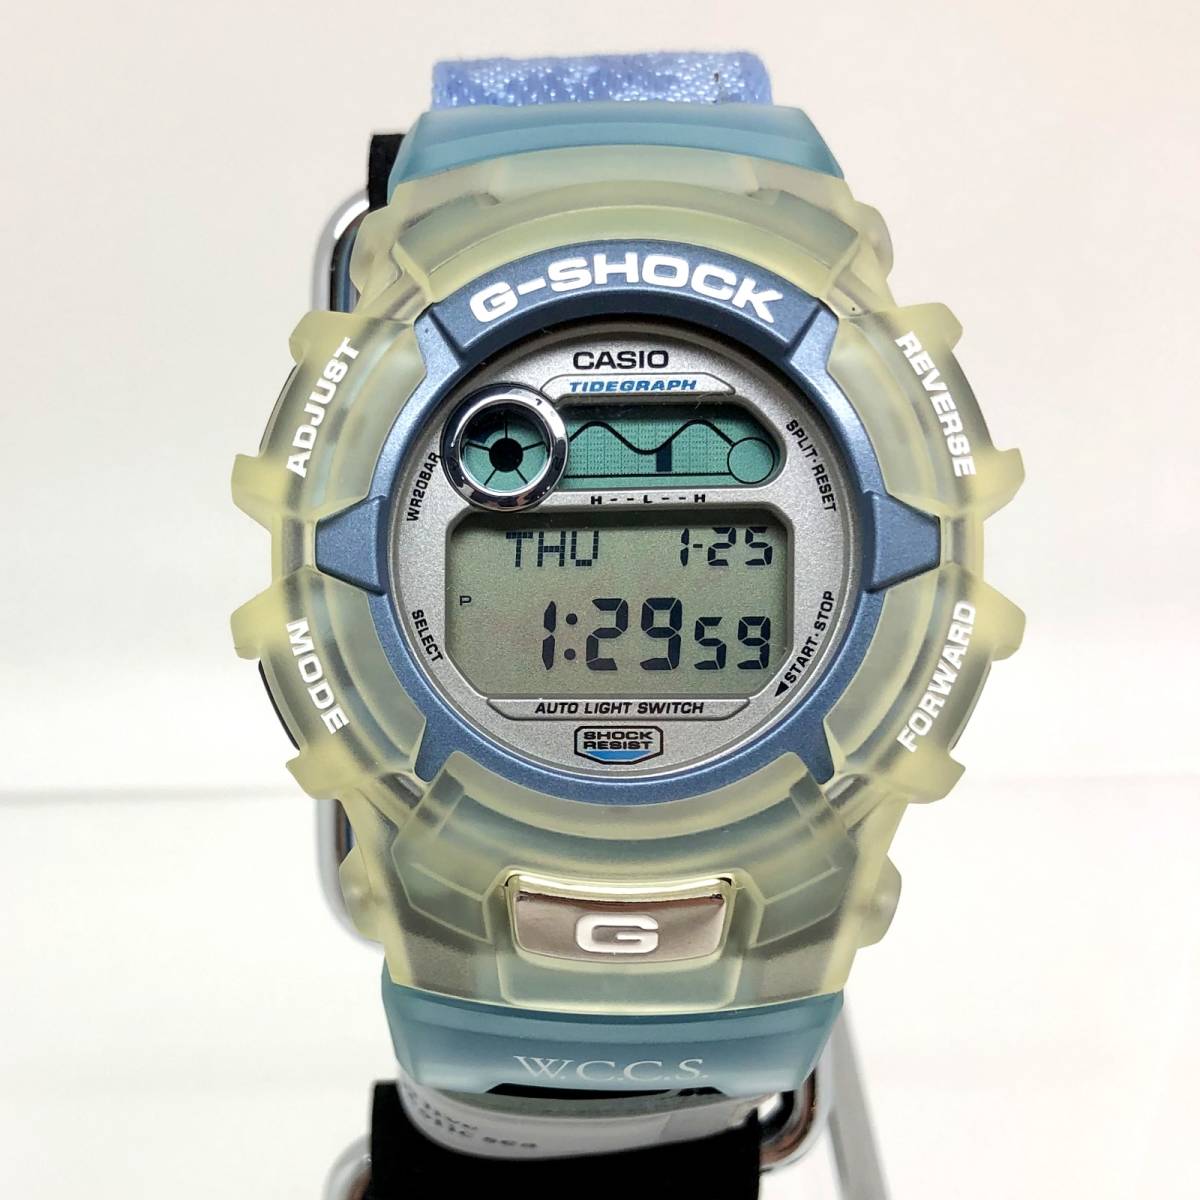 極美品 G-SHOCK ジーショック CASIO カシオ 腕時計 G-2100WC-7JR WCCS 世界サンゴ礁保護協会 2000年 デジタル 【ITPW3YFRRA2O】